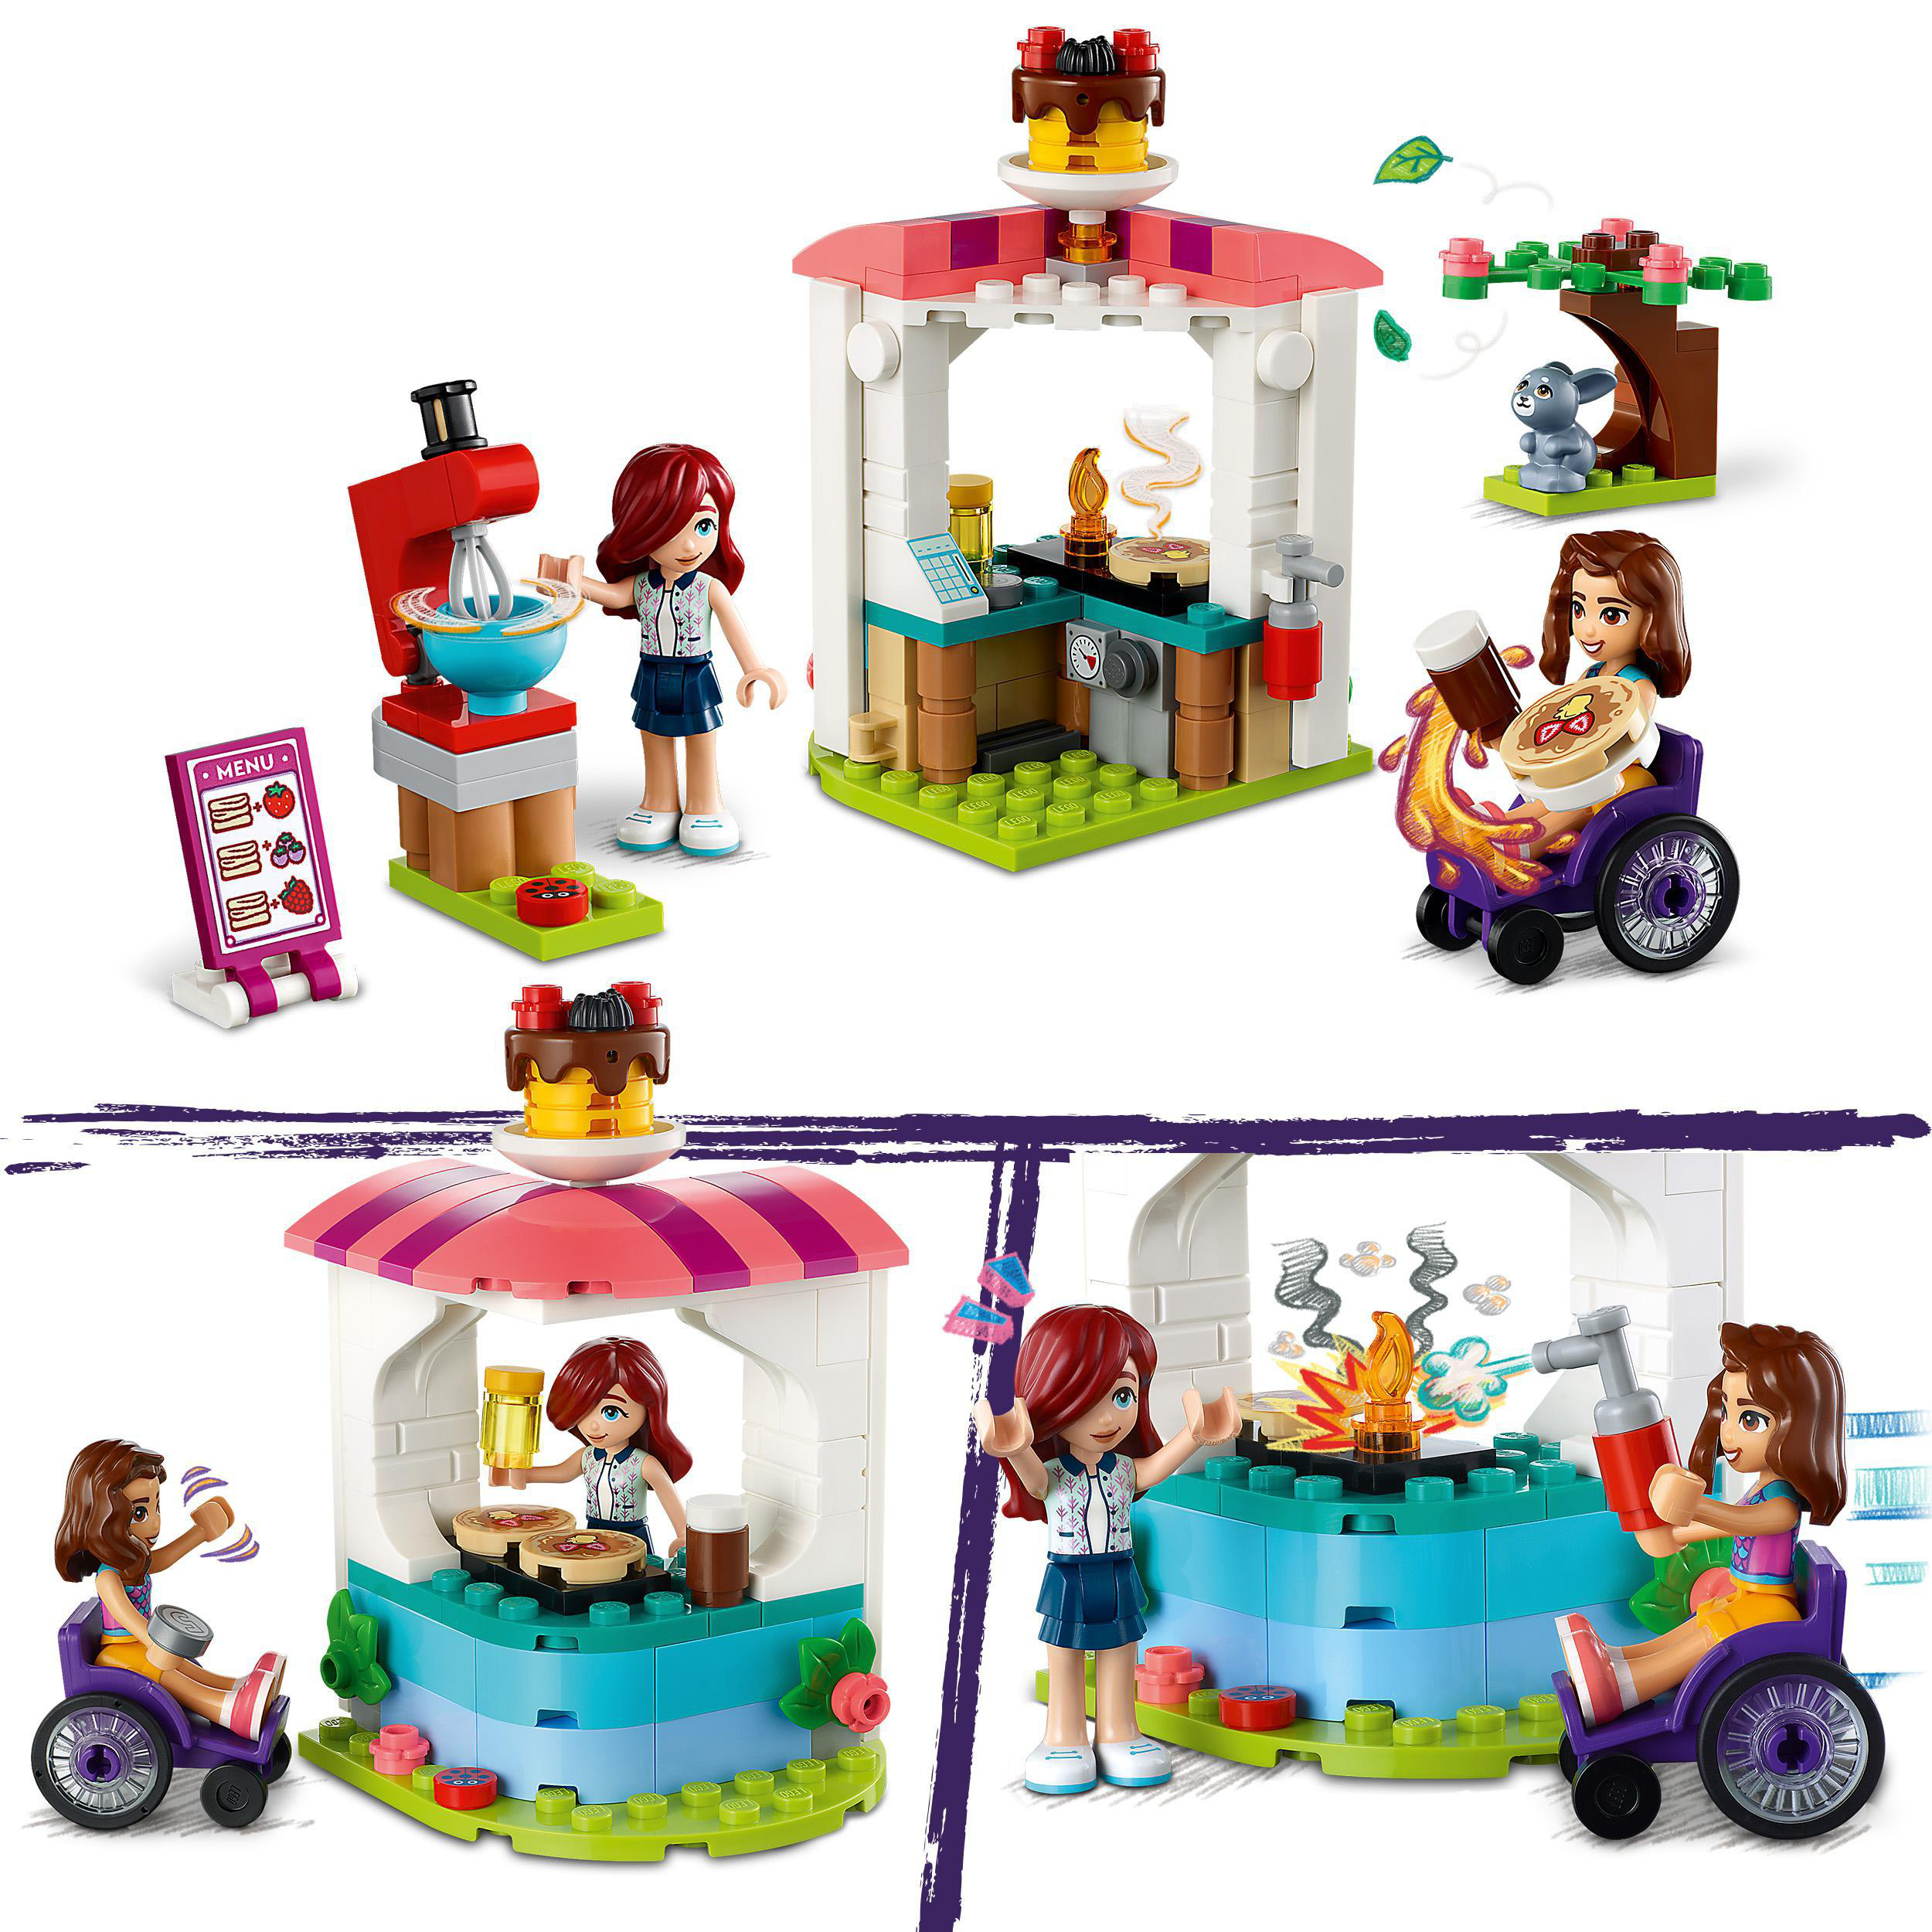 Mehrfarbig 41753 Pfannkuchen-Shop Friends LEGO Bausatz,